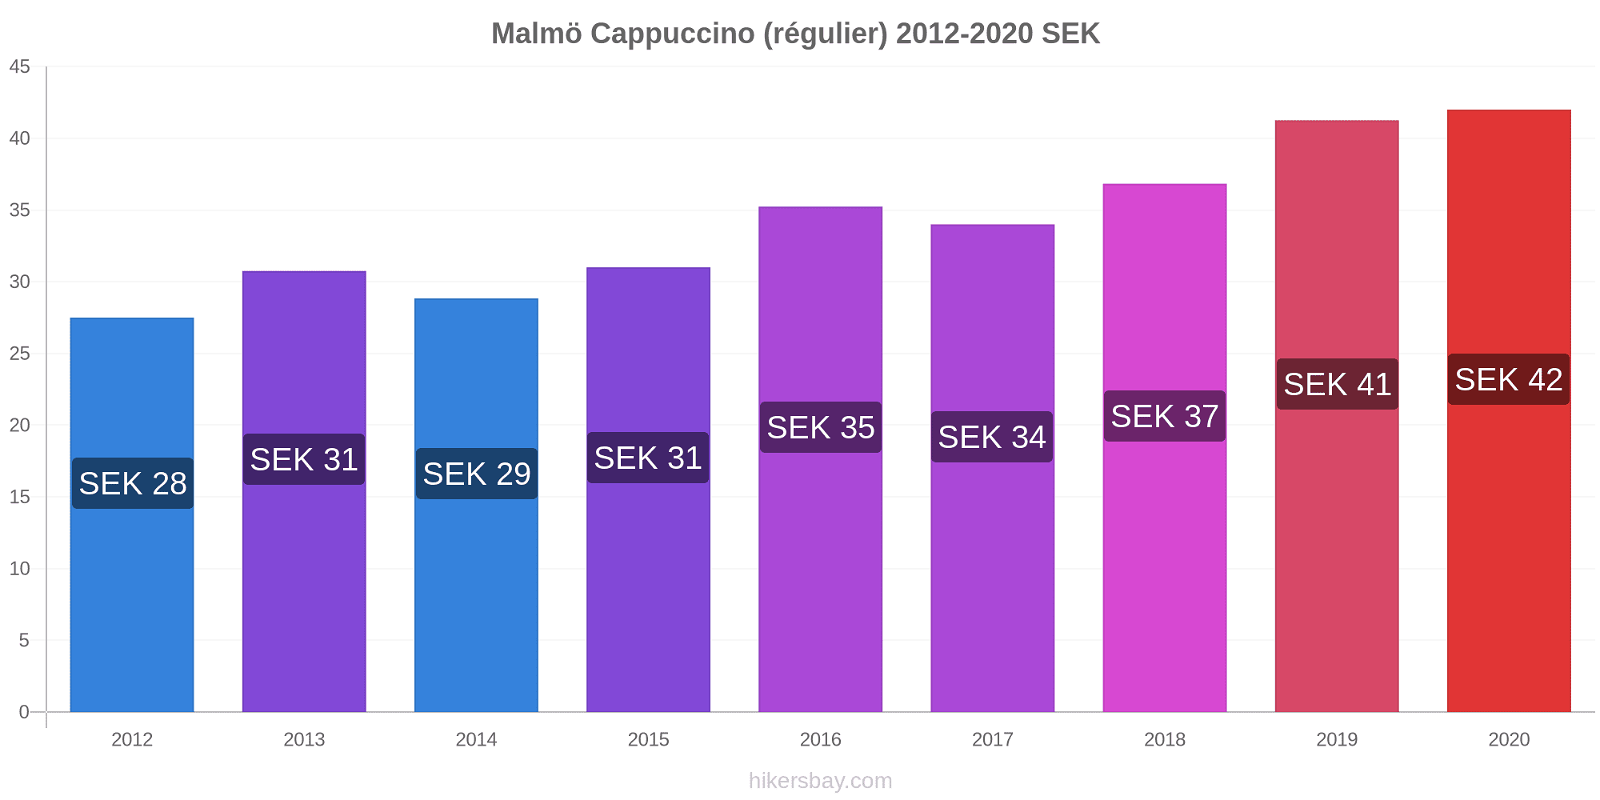 Malmö changements de prix Cappuccino (régulier) hikersbay.com